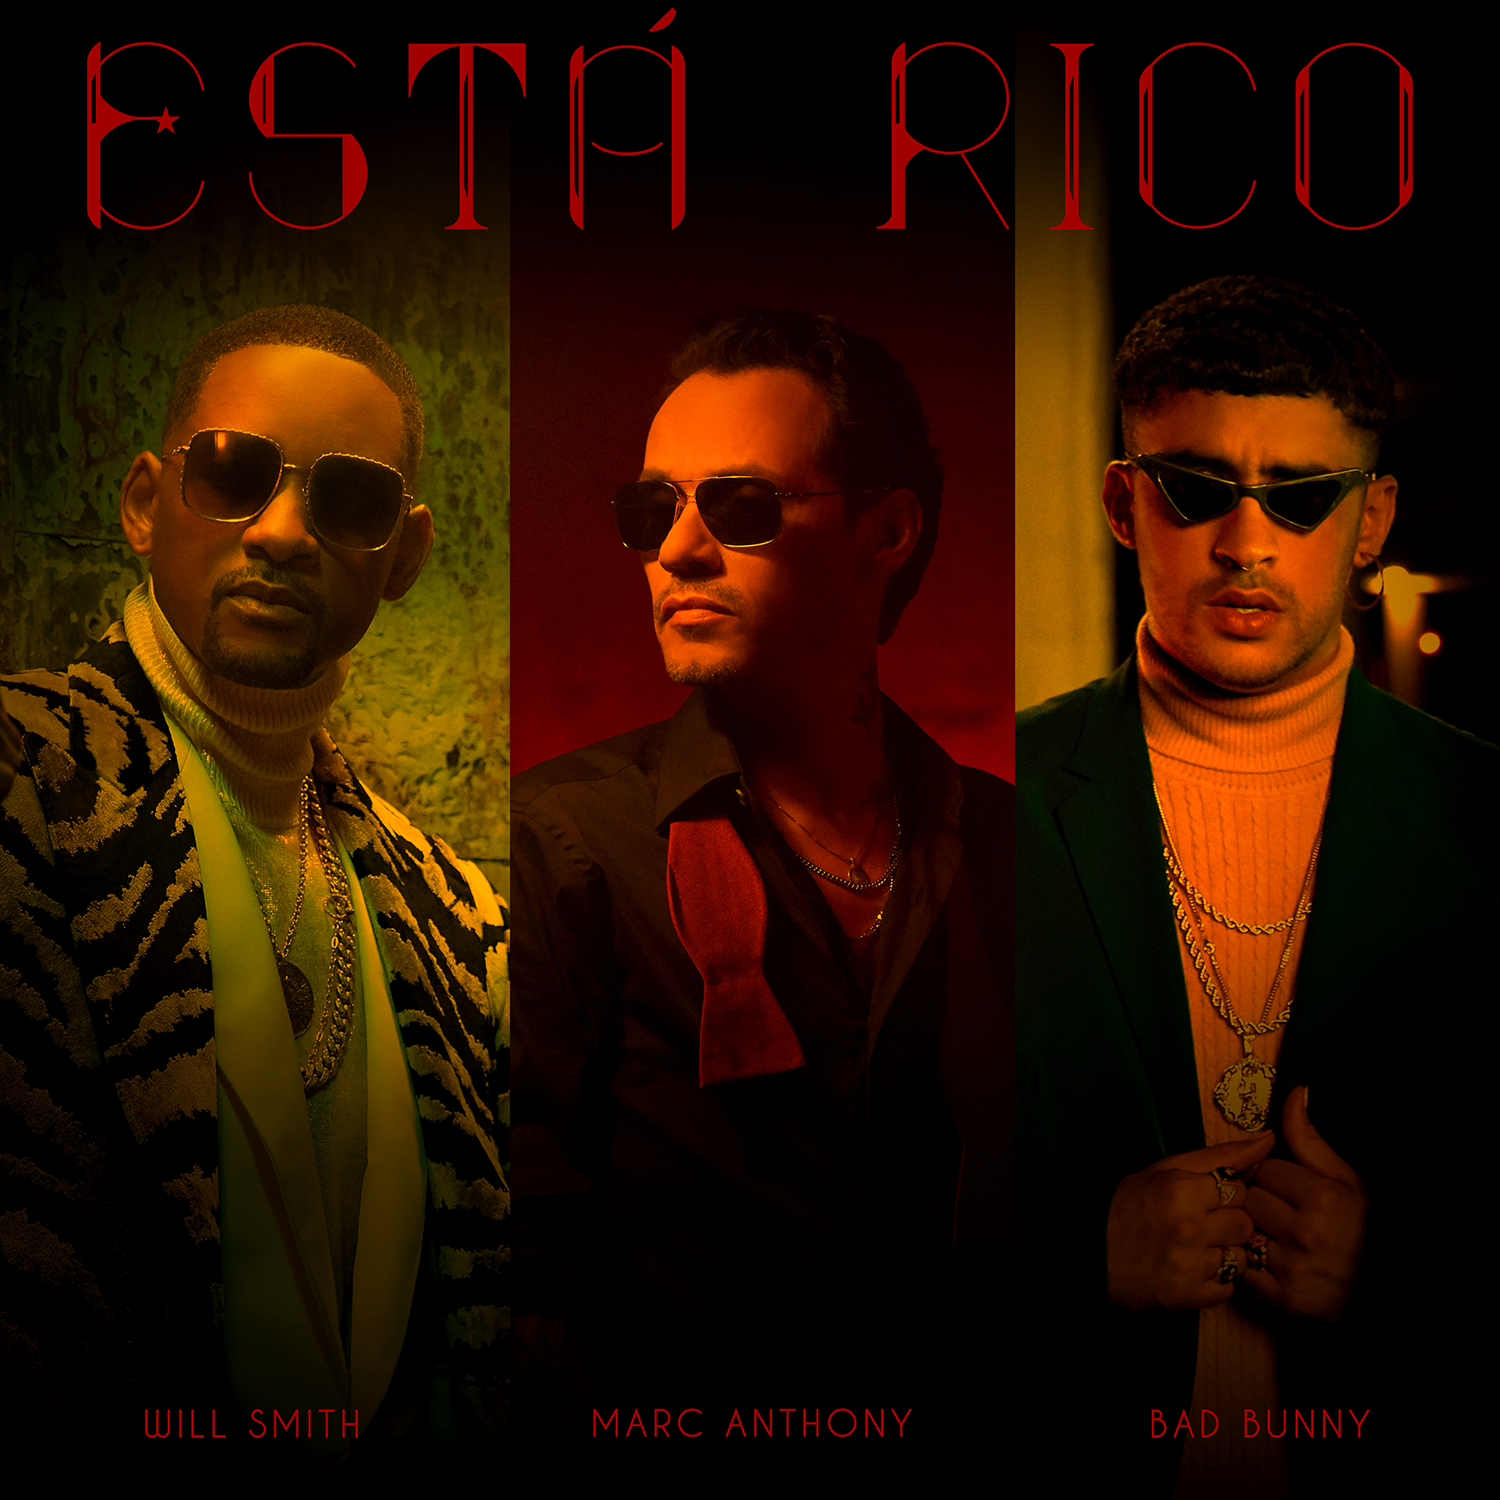 MARC ANTHONY Y WILL SMITH ANUNCIAN TREMENDO JUNTE MUSICAL CON LA PARTICIPACION ESTELAR DE BAD BUNNY TITULADO “ESTA RICO”